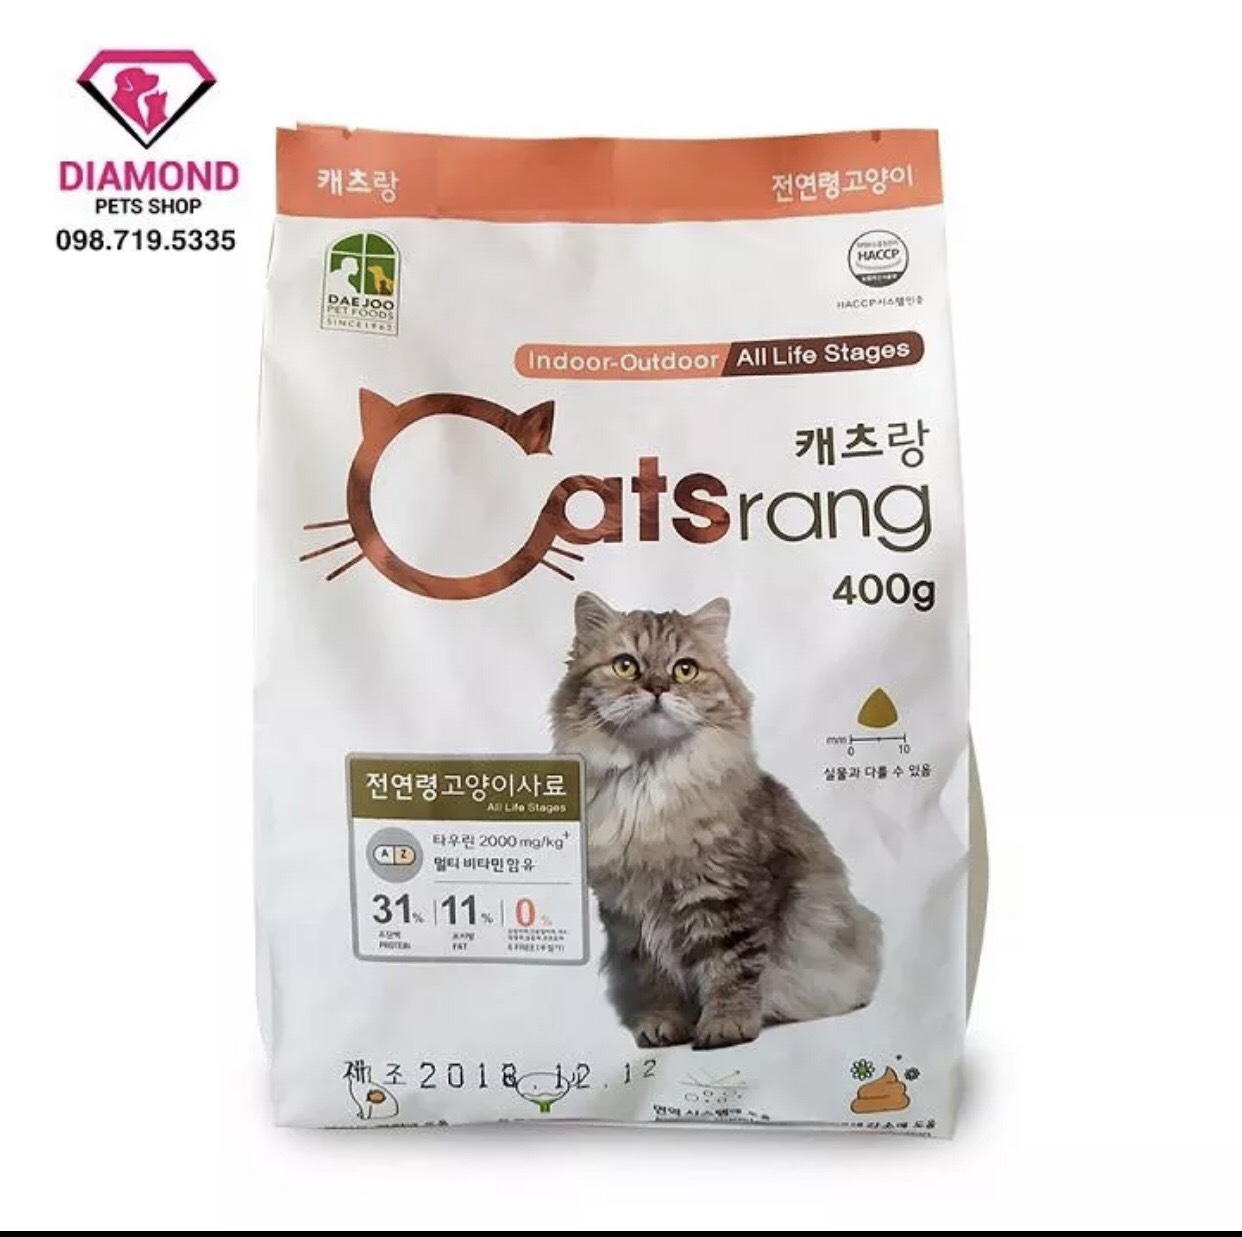 Thức ăn cho mèo mọi lứa tuổi Catsrang 